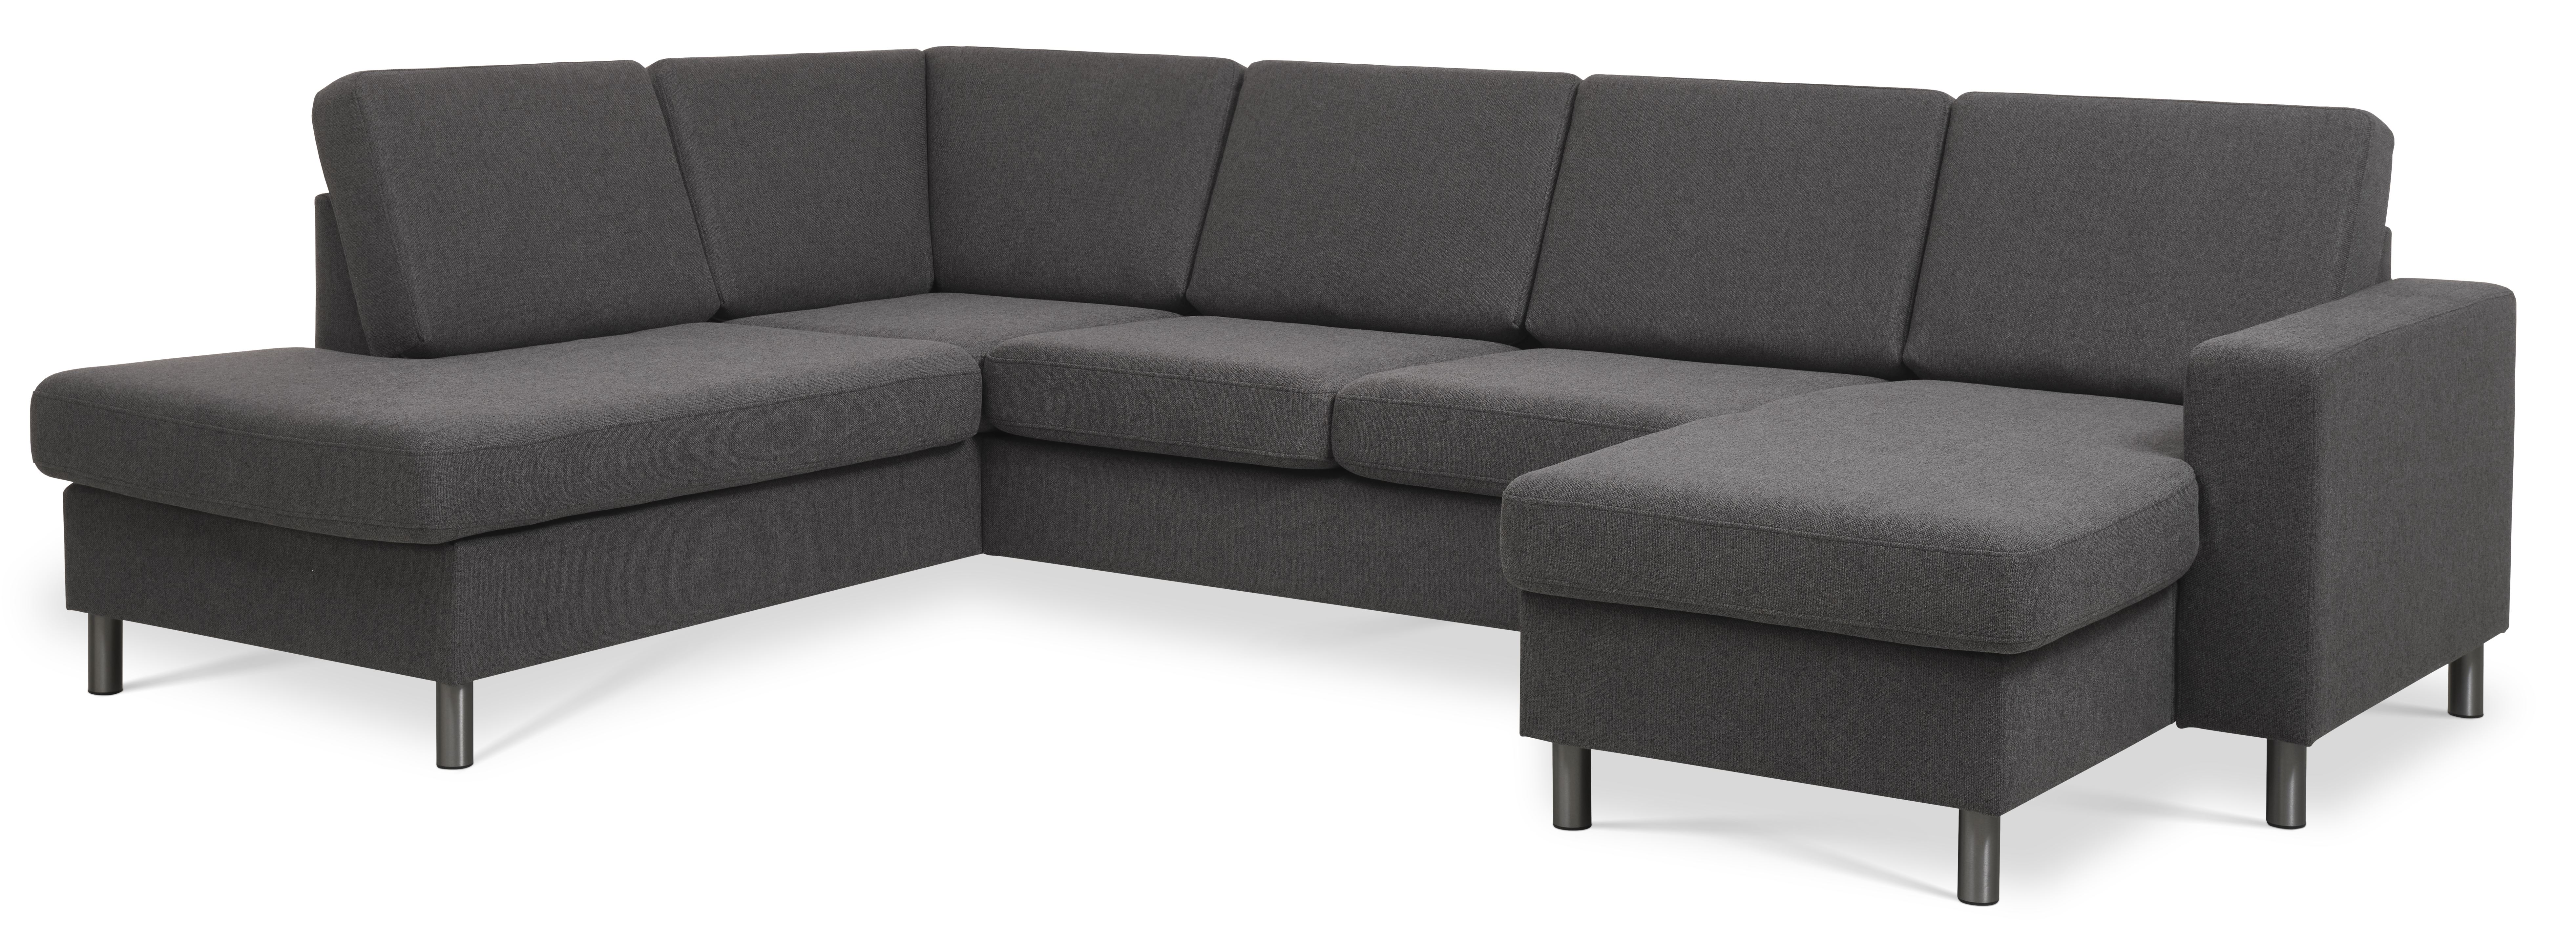 Pan set 4 U OE left sofa med chaiselong - antracitgrå polyester stof og børstet aluminium